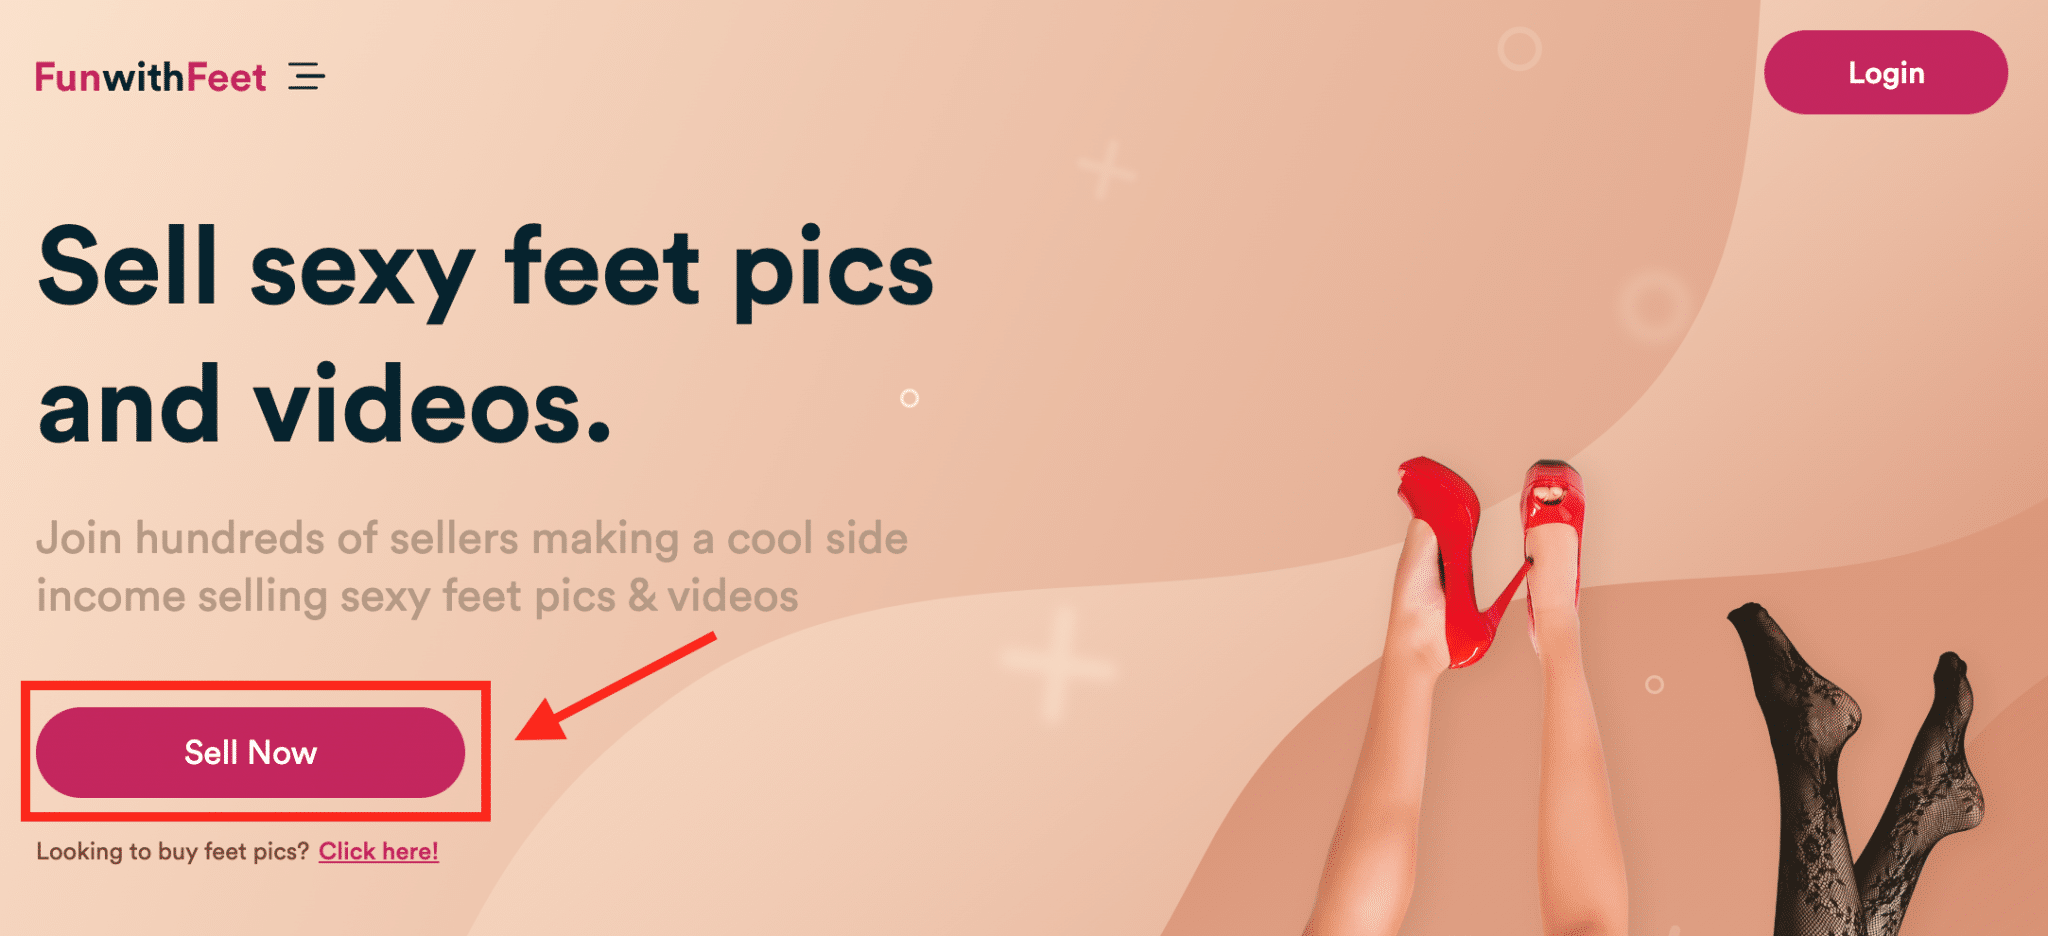 Melden Sie sich bei FunWithFeet an und Sie können Fotos von Füßen verkaufen und von zu Hause aus online Geld verdienen